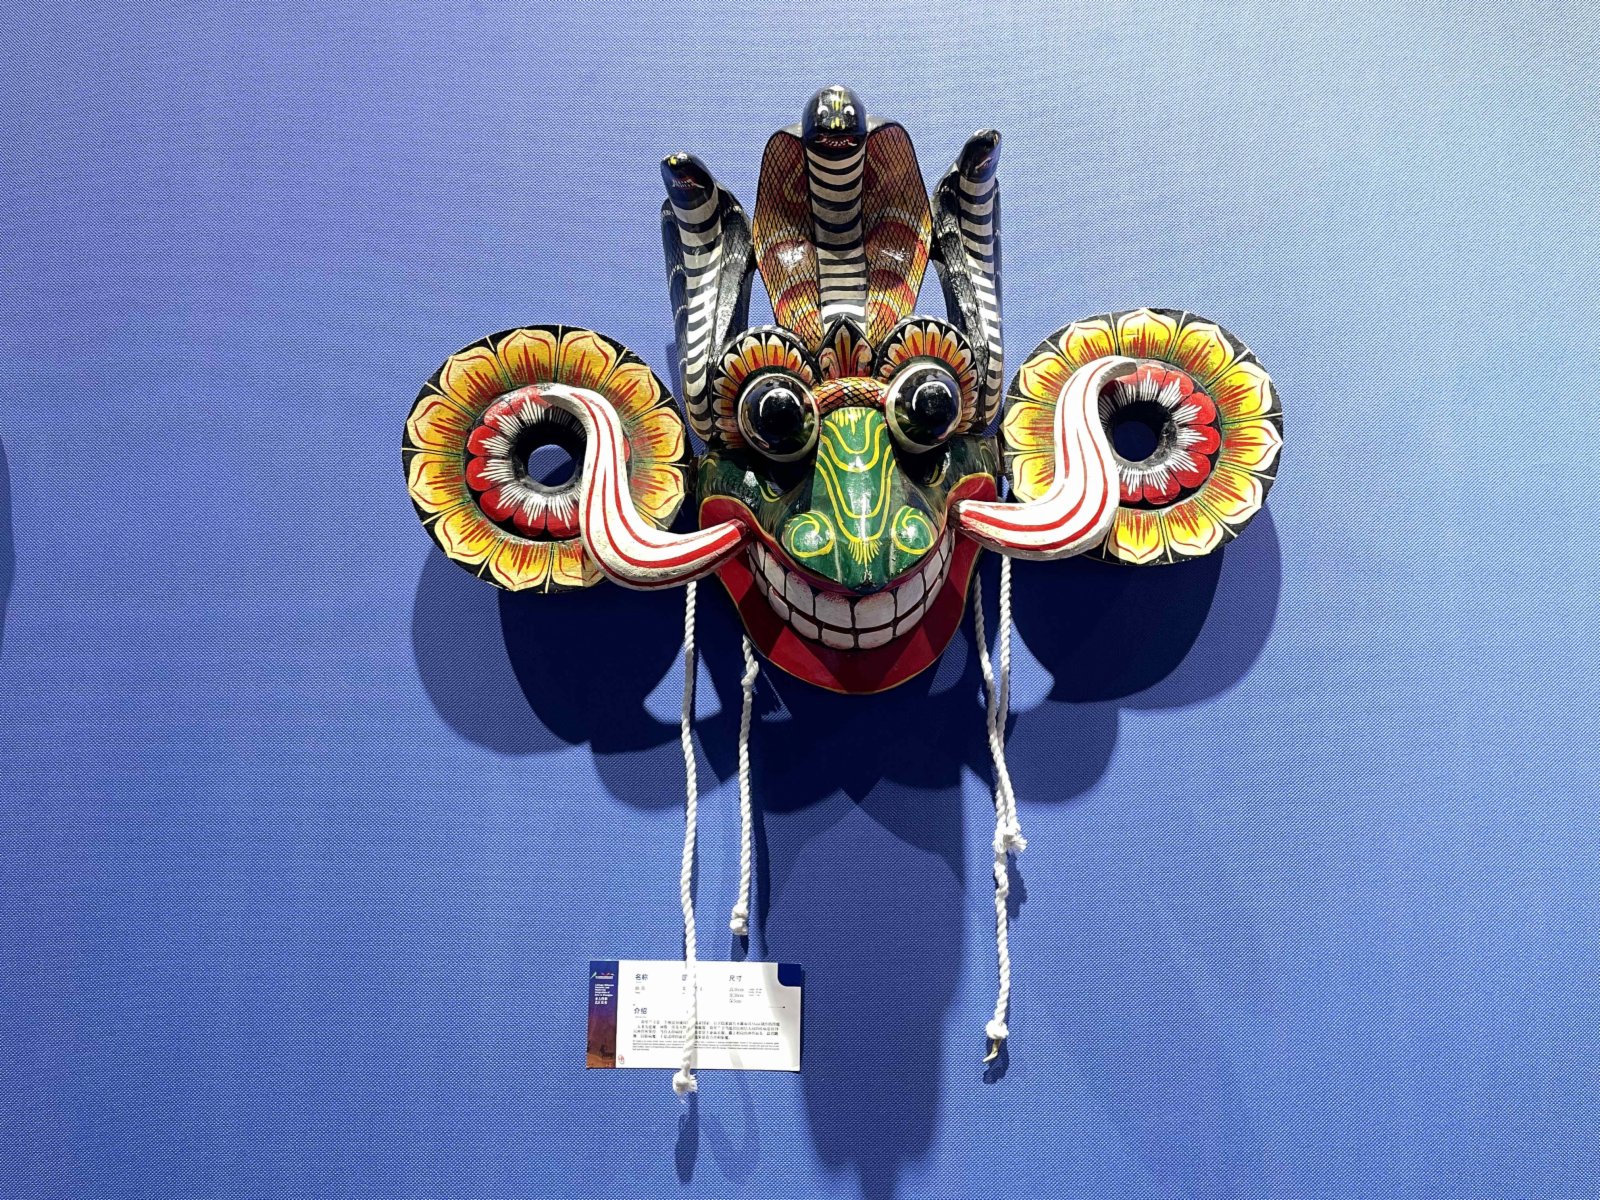 現場展出的斯里蘭卡面具。(記者張仕珍攝)